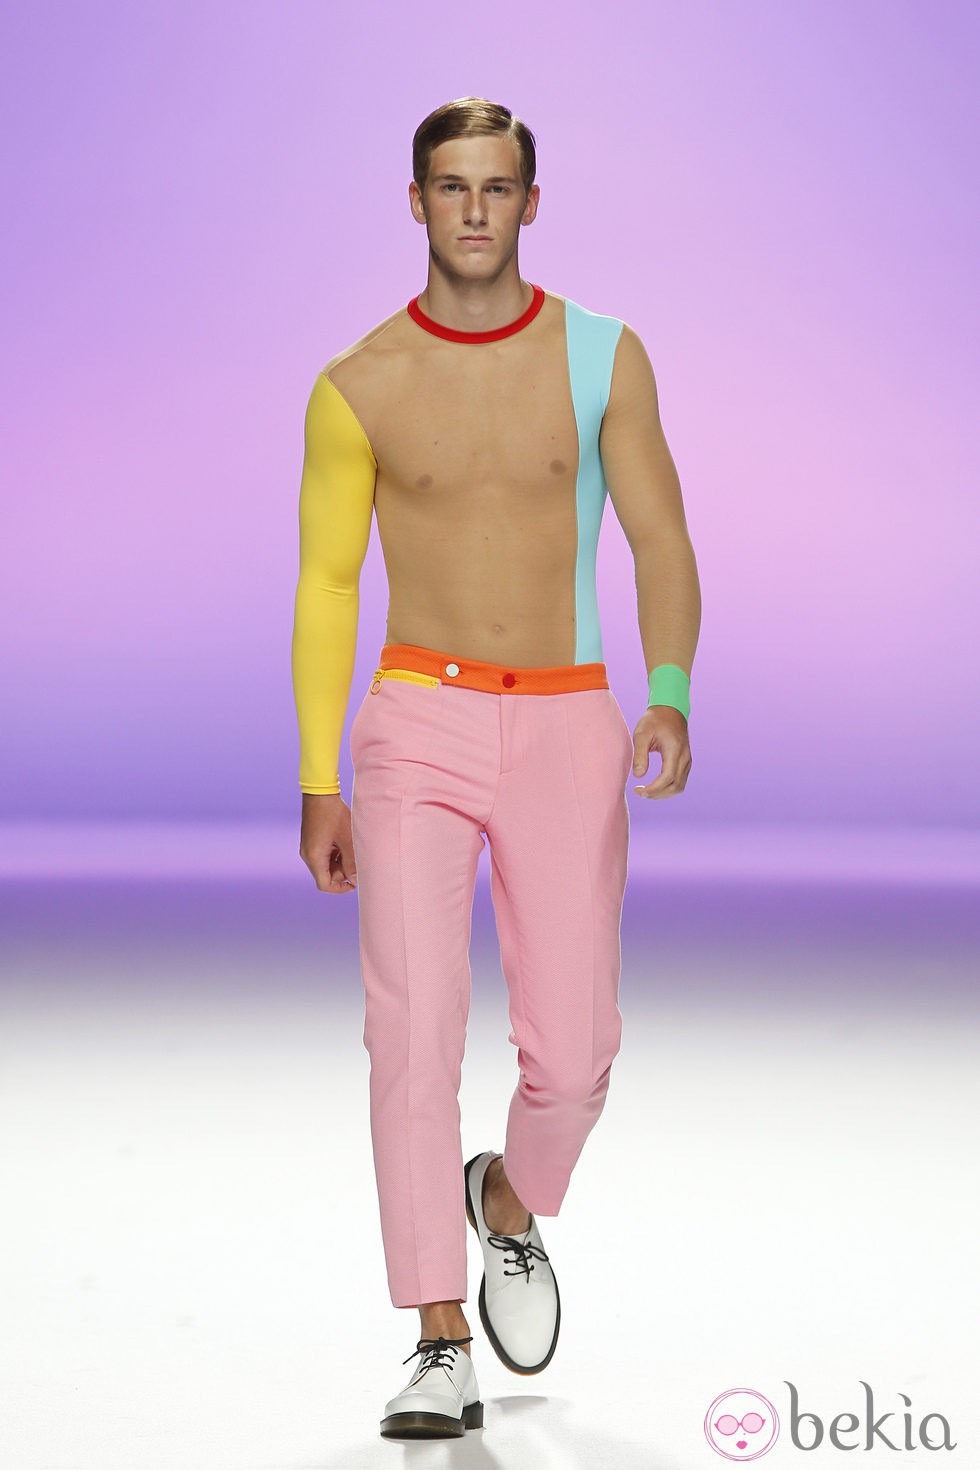 Pantalón rosa para hombre de Davidelfín, colección primavera 2012